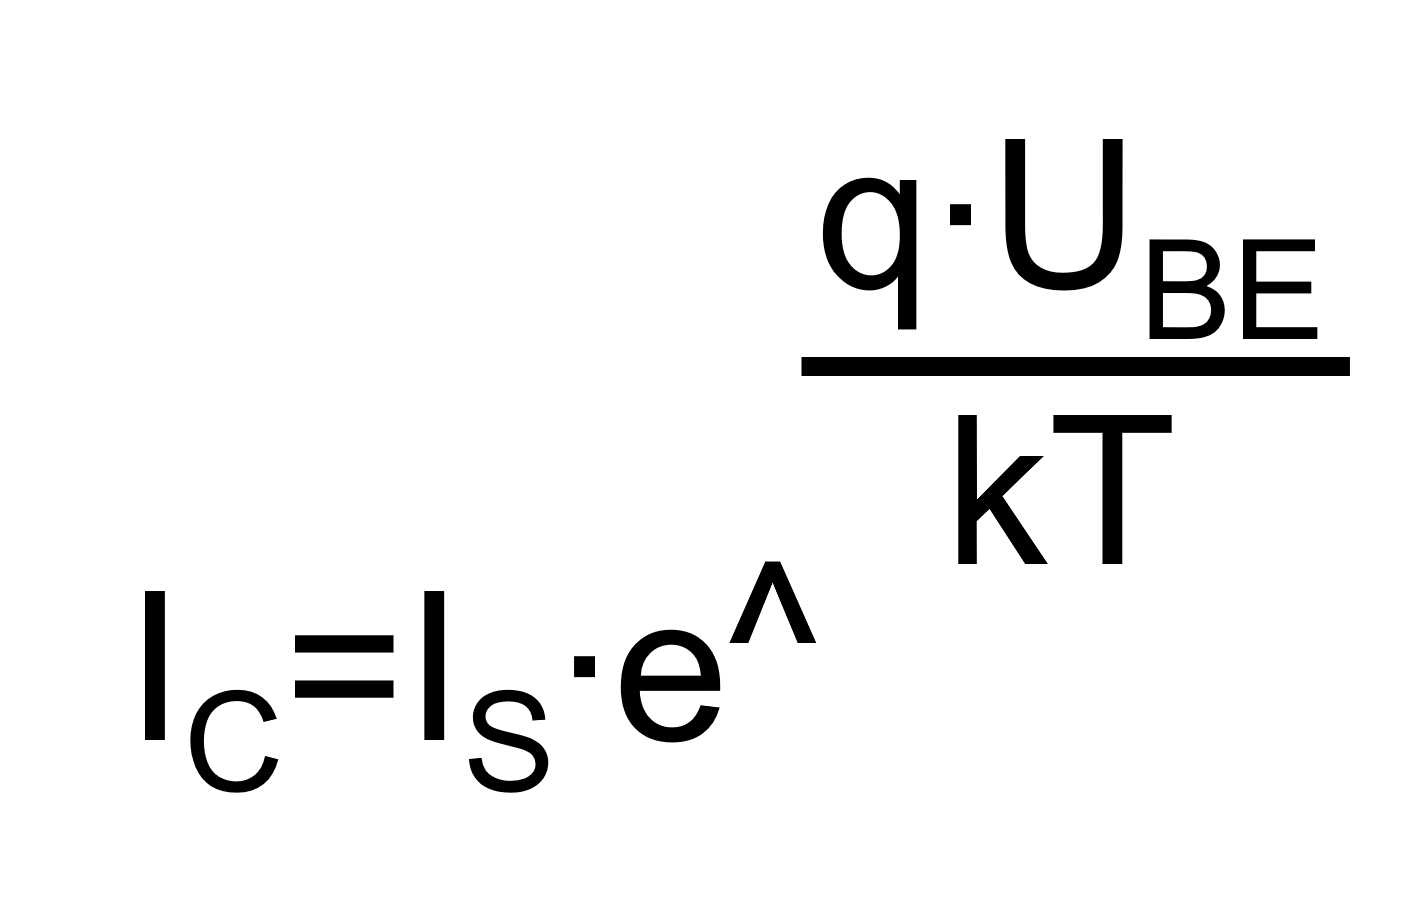 Das Bild zeigt die Formel zur Berechnung des Kollektorstrom im Kleinsignal-Ersatzschaltbild des Bipolartranistor